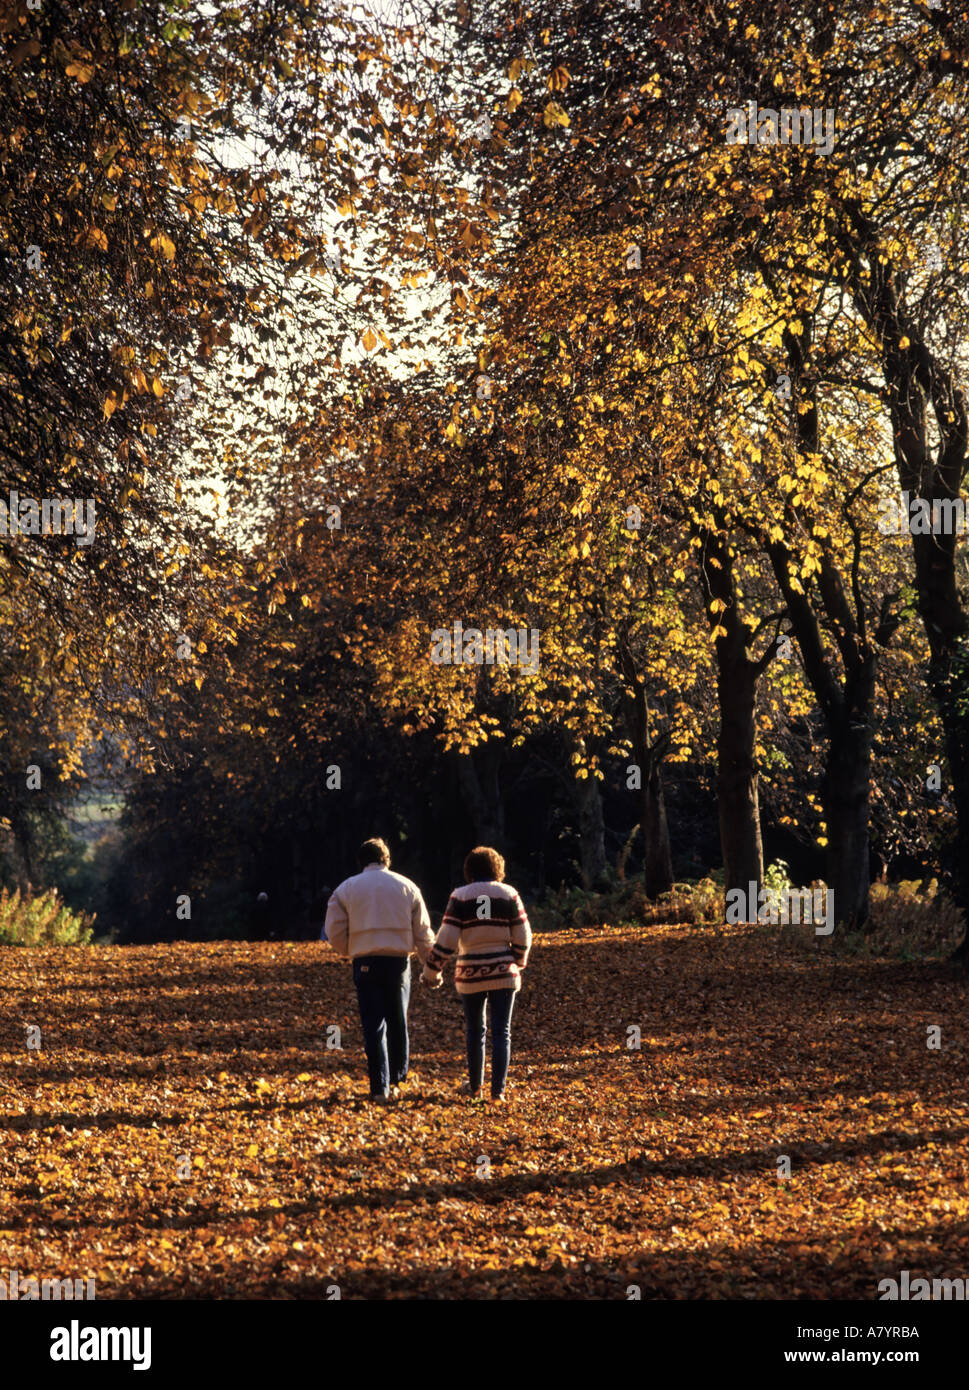 Weald Country Park Avenue idyllische alte Rosskastanie Bäume Herbst Farbe Landschaft Landschaft von Essex Paar Hände halten Brentwood England Großbritannien Stockfoto